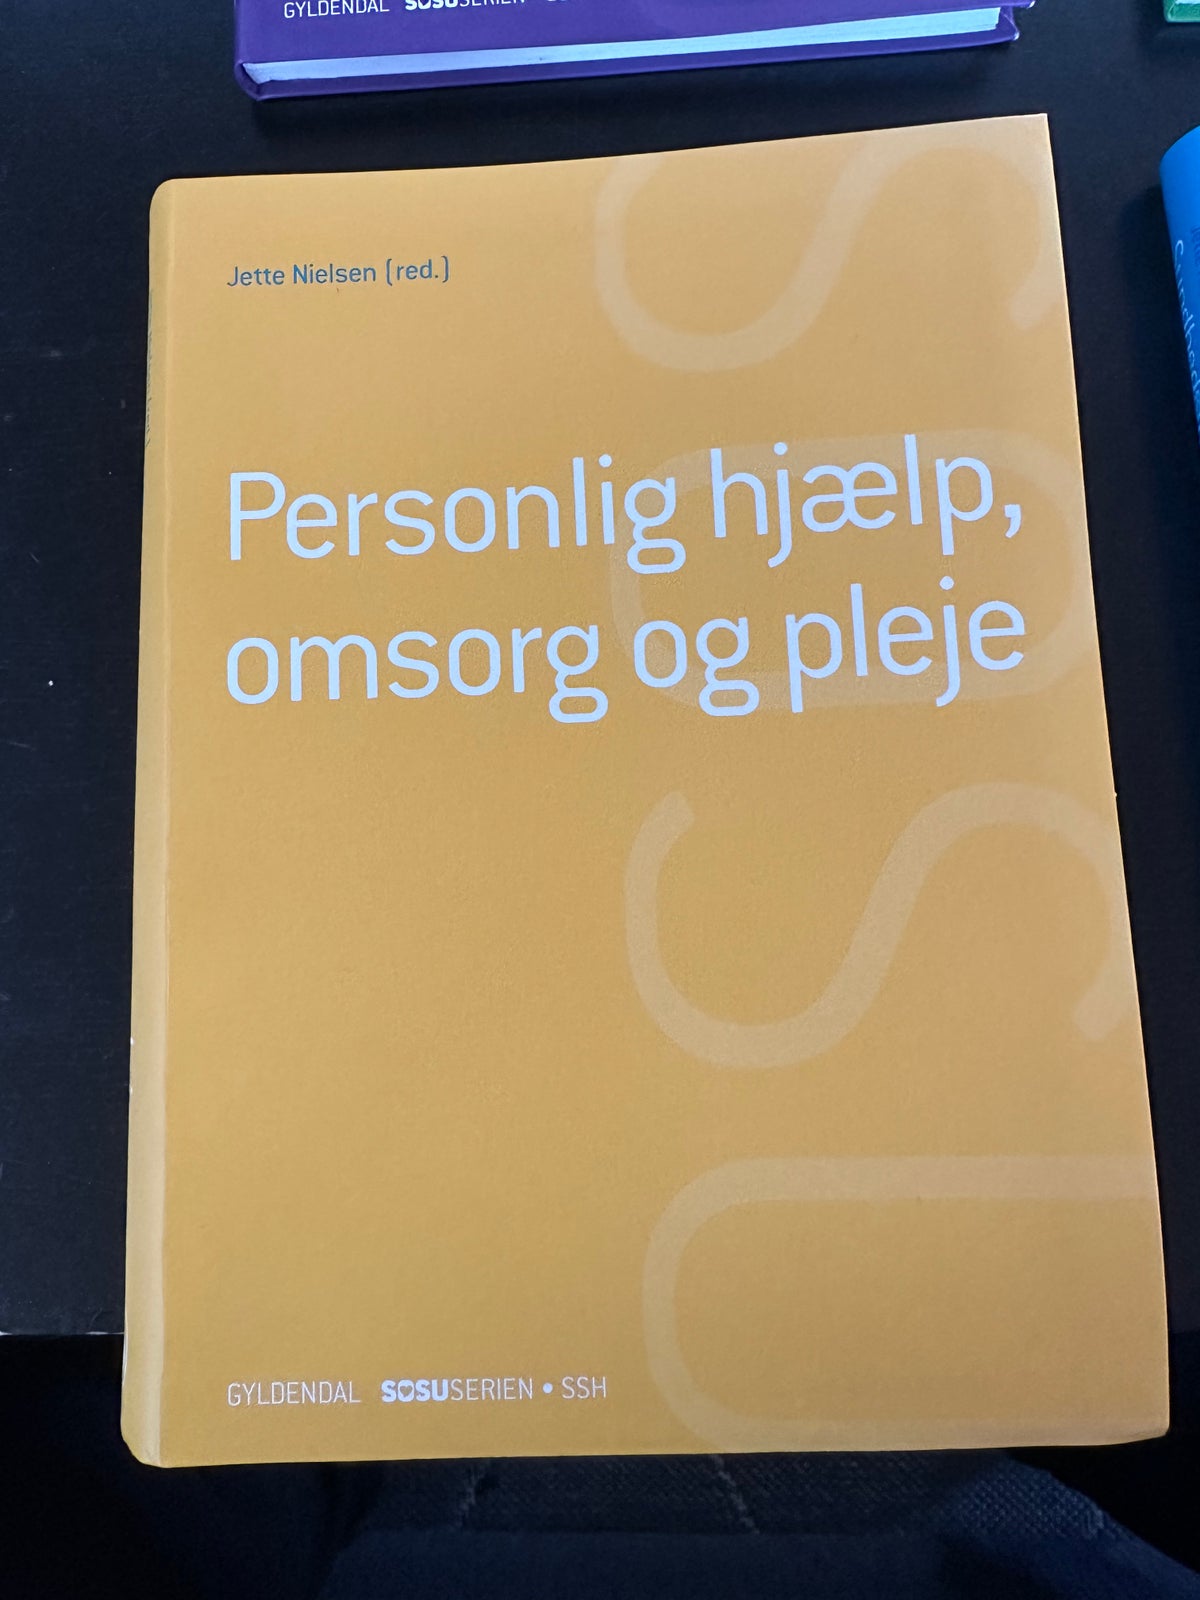 SOSU-hjælper bøger , Jette Nielsen, år 2017